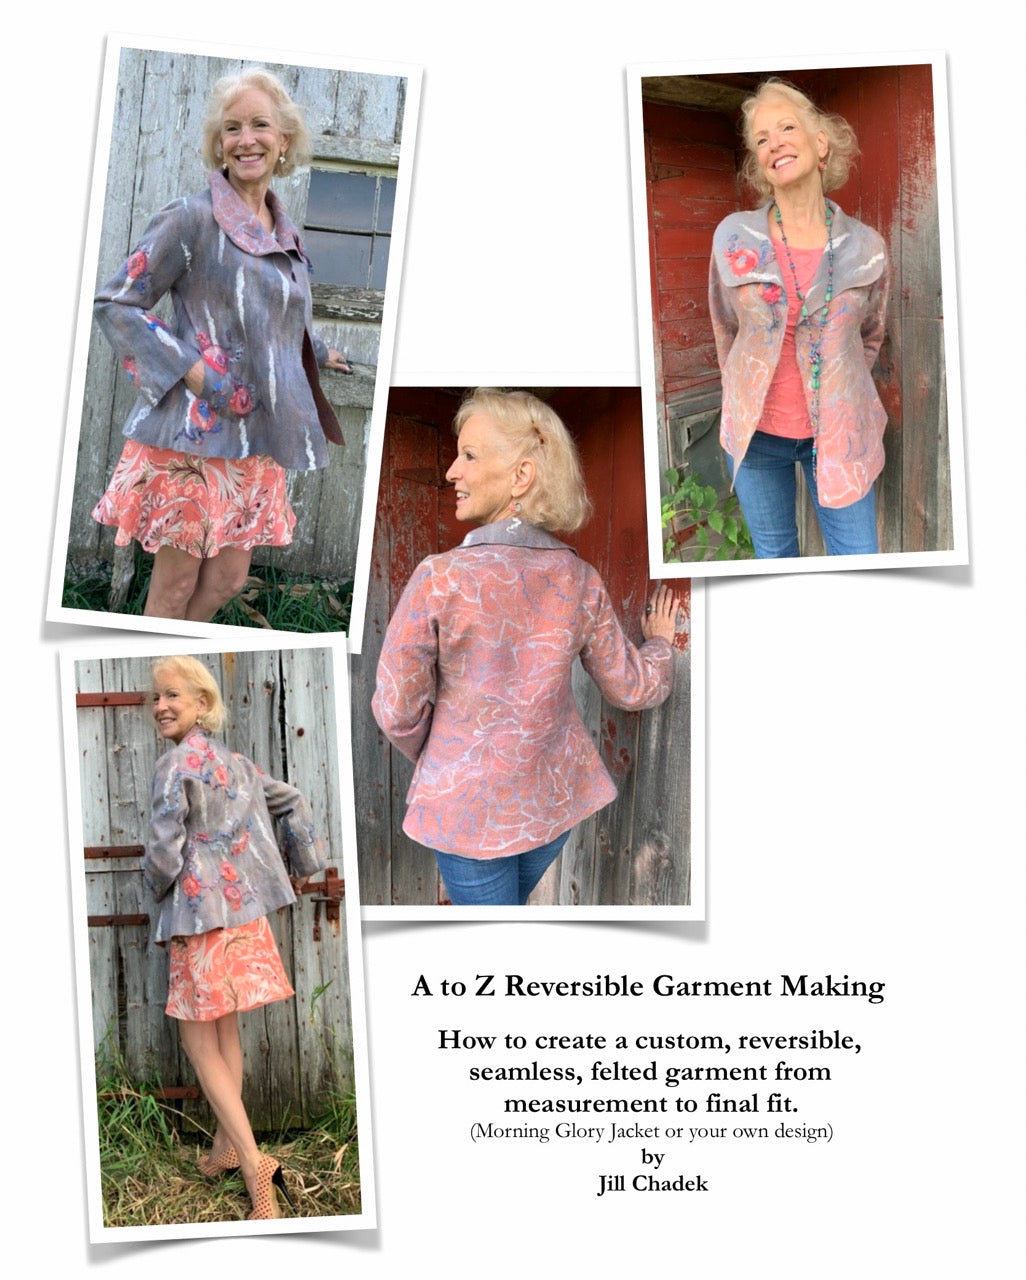 Jill Chadek's - A to Z Reversible Garment Making